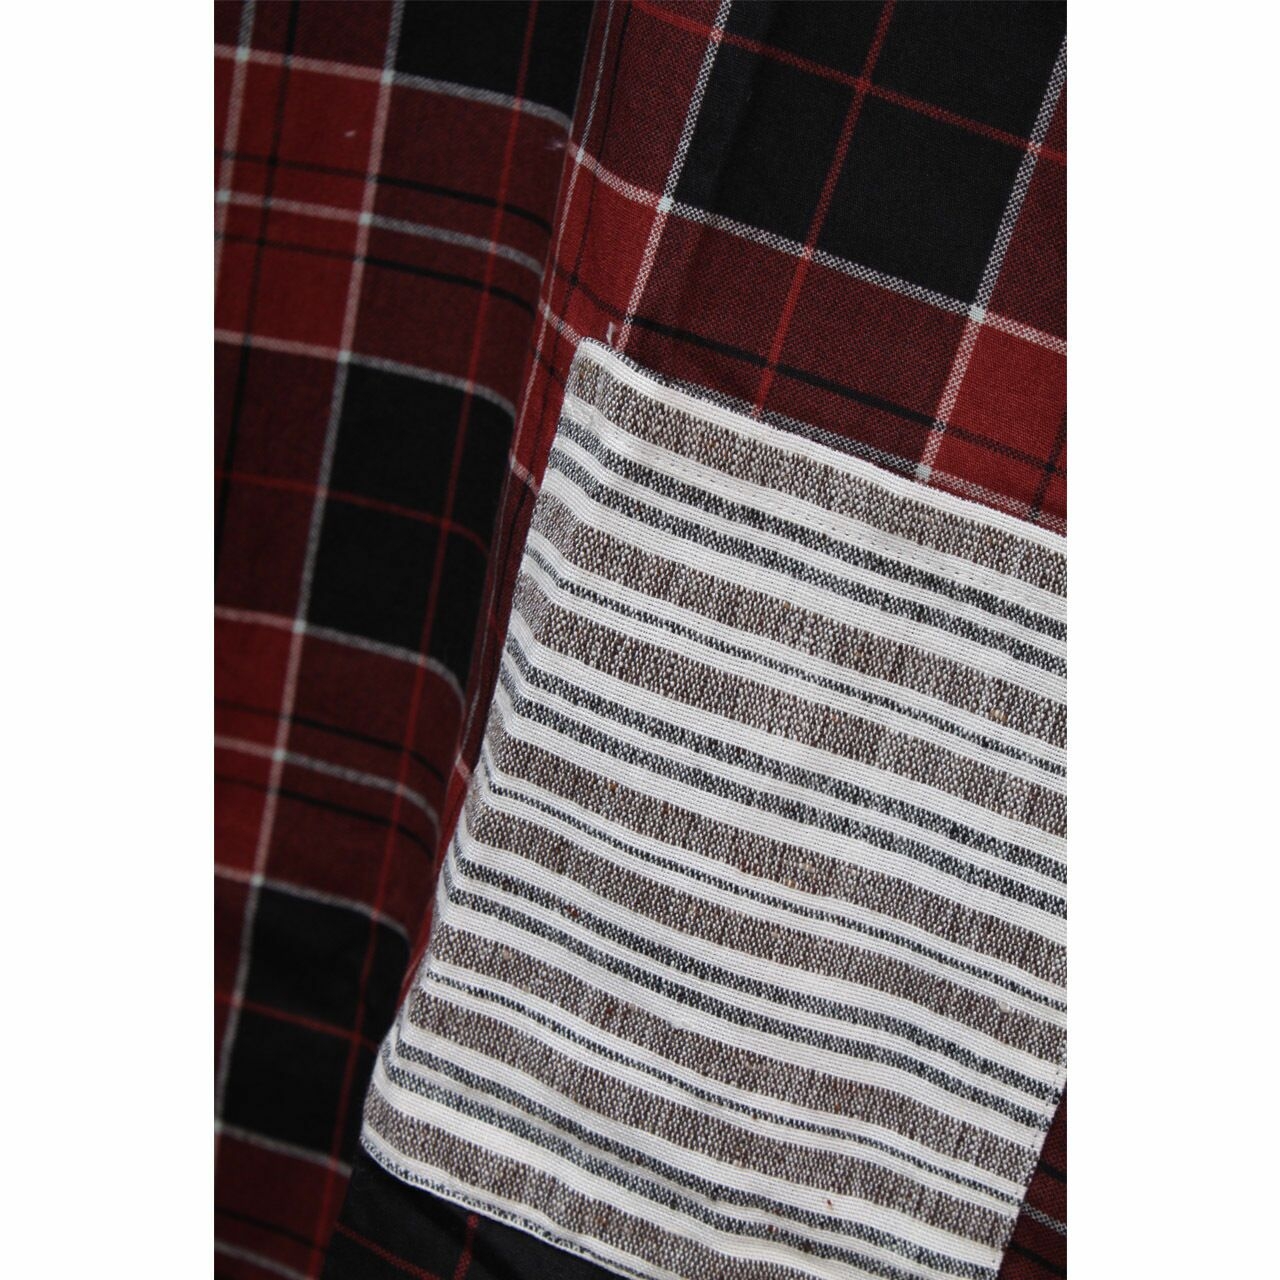 Lekat Dua Maroon Geometric Checkred With Pockets Midi Dress [L]